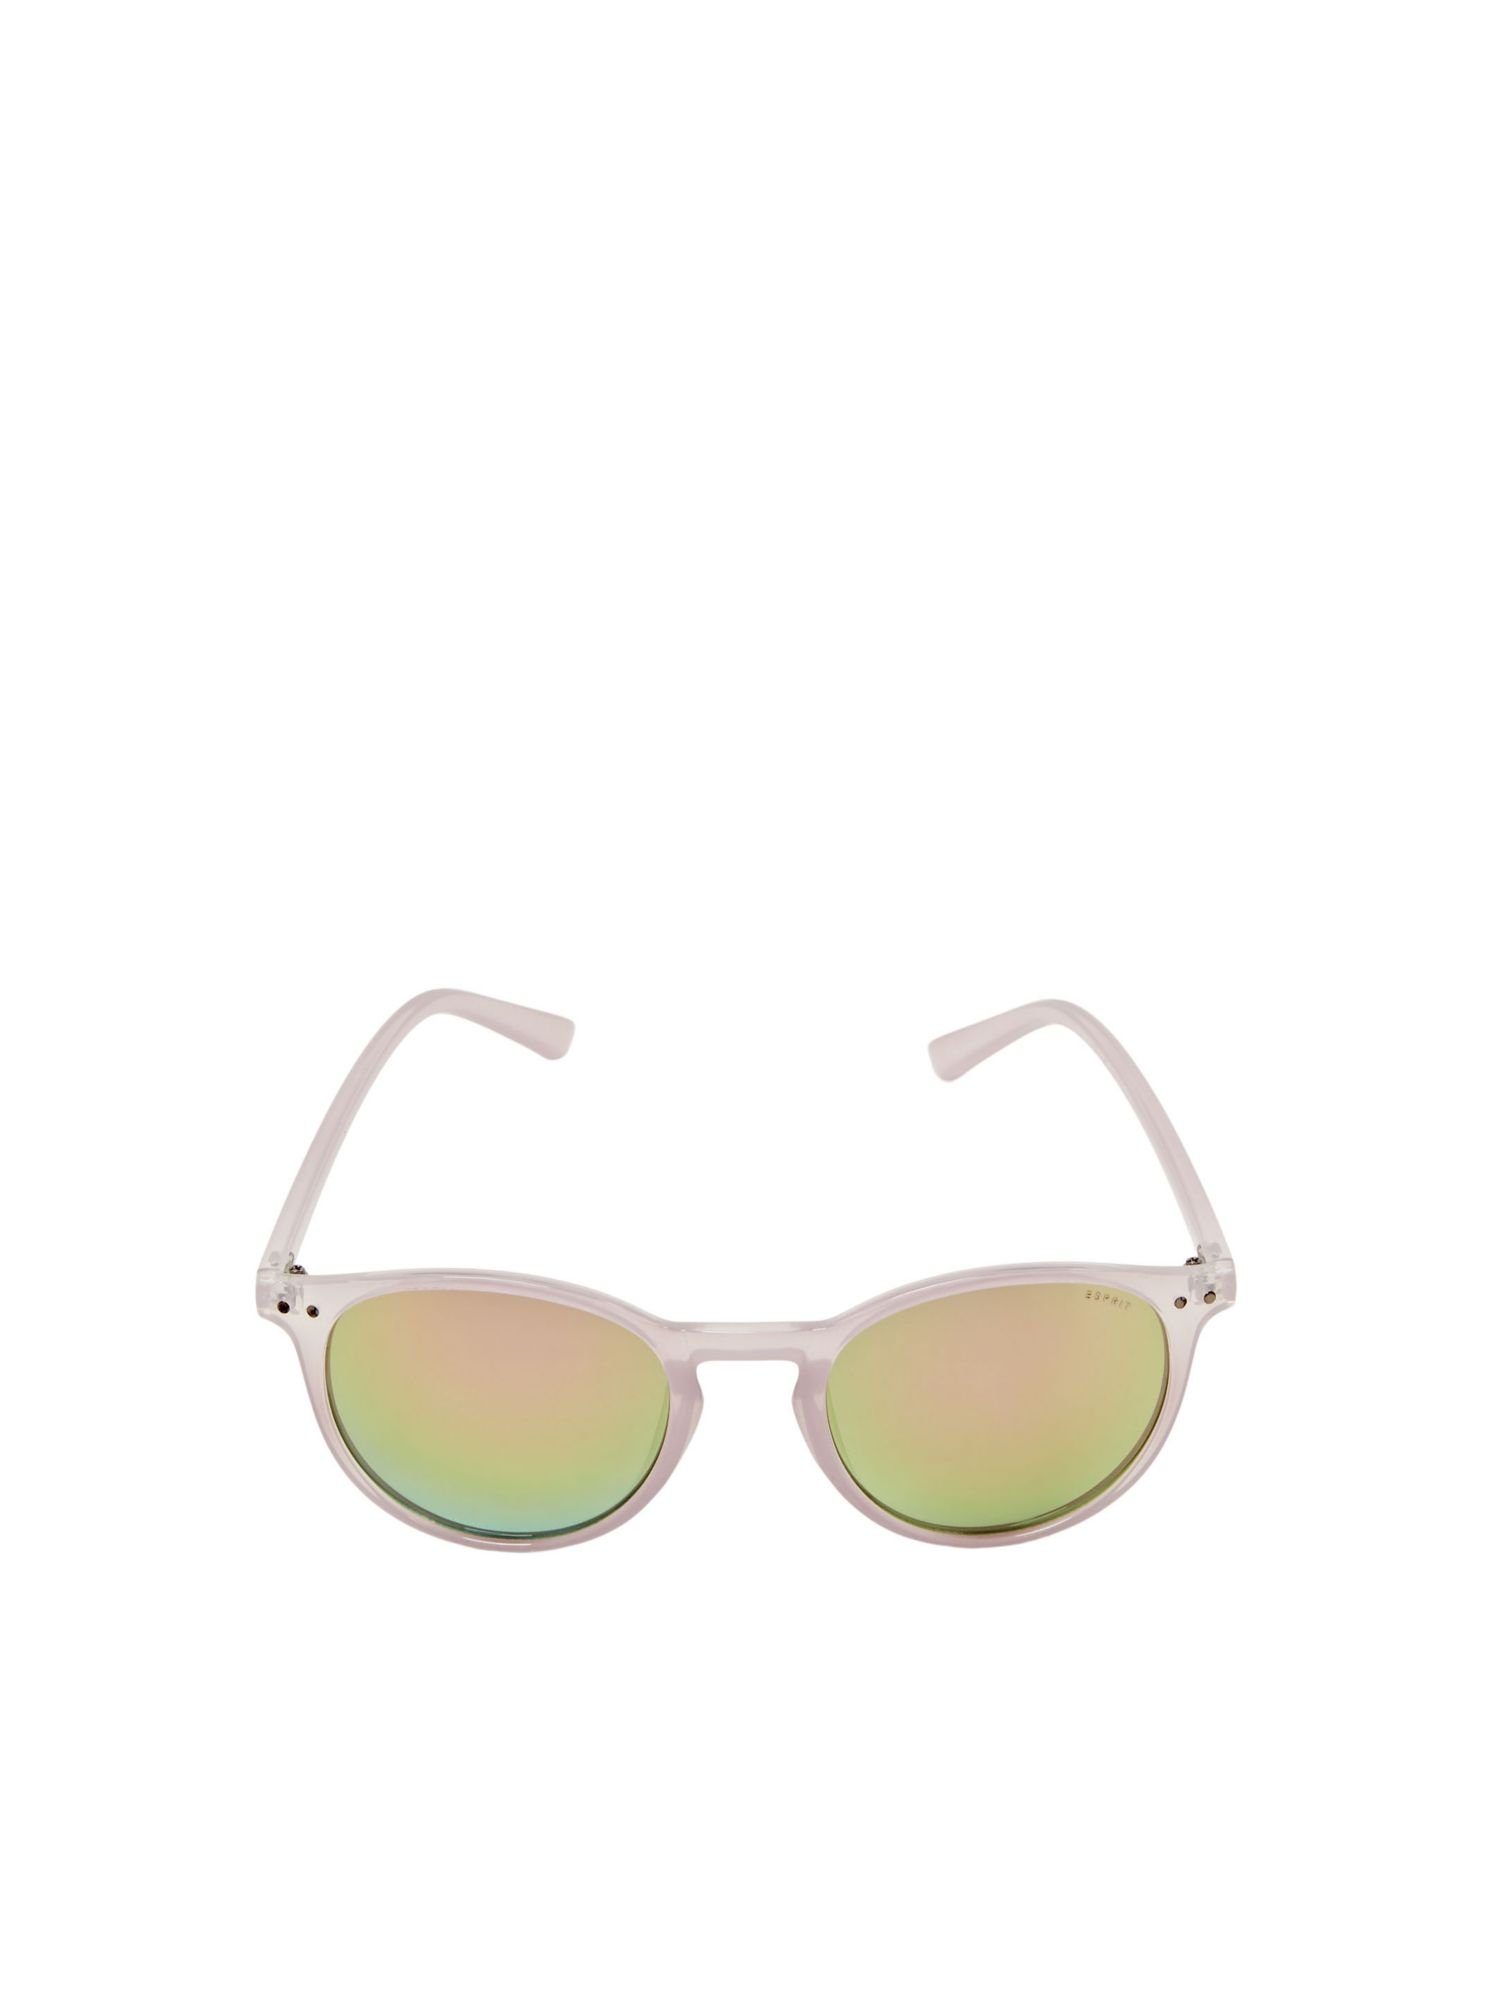 Unisex-Sonnenbrille Esprit Sonnenbrille PURPLE mit Gläsern verspiegelten